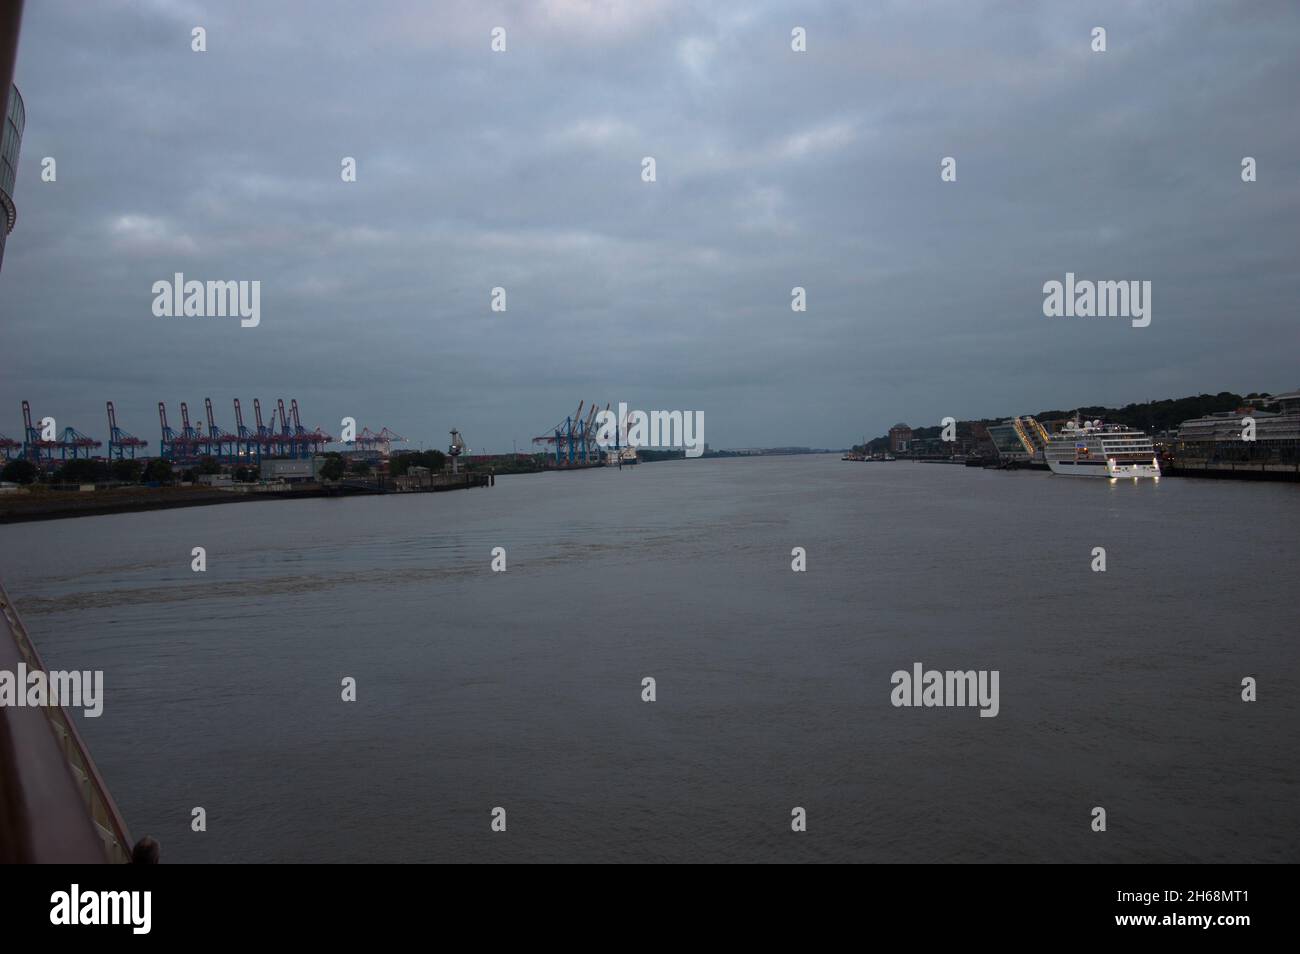 Hamburger Hafen eine Reise beginnt mit AIDA Stock Photo